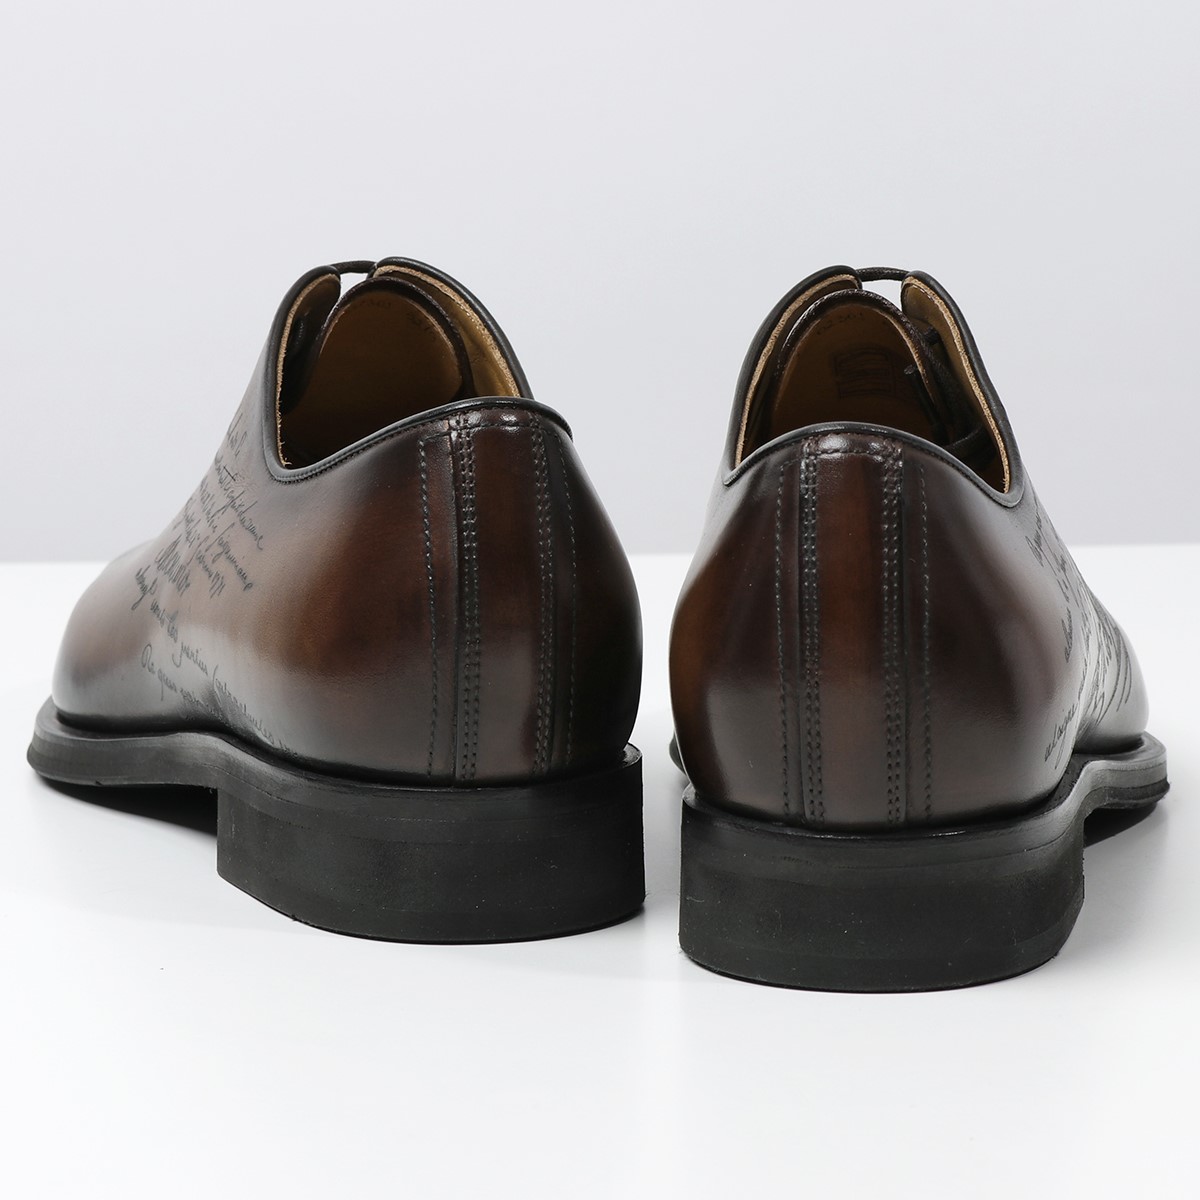 Berluti ベルルッティ S5219-002 アレッサンドロ アンフィニ レザーオックスフォード スクエアトゥ シューズ 革靴  TDM-INTENSO 靴 メンズ | インポートセレクト musee